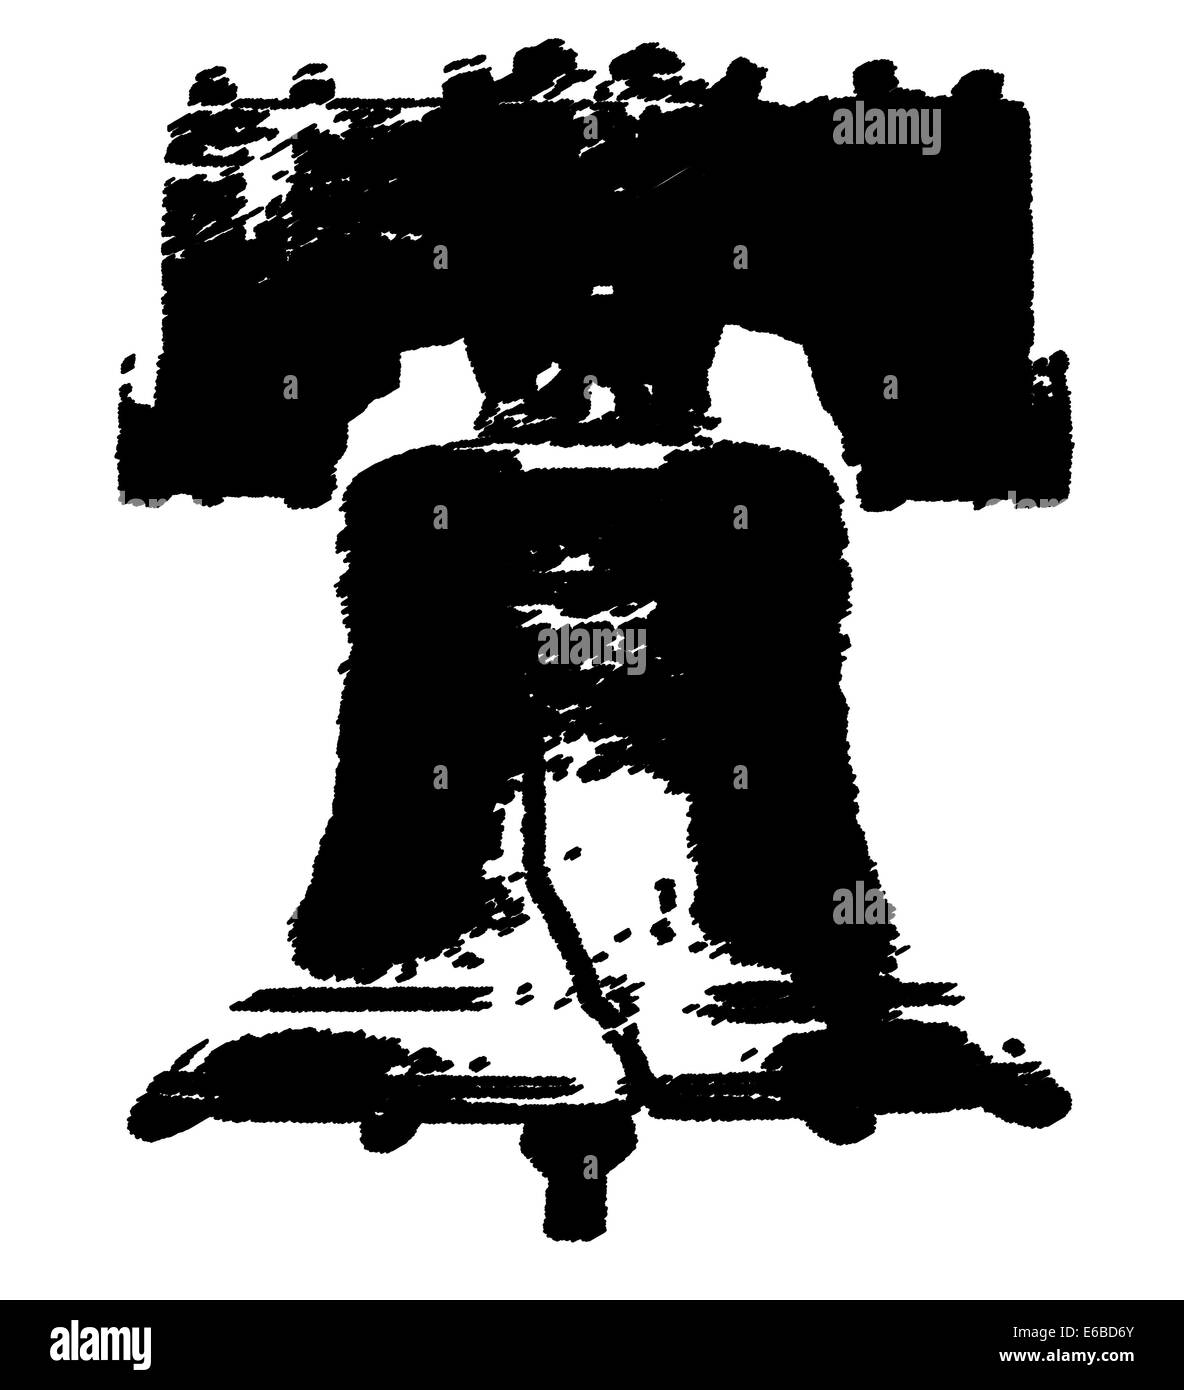 Dibujo en blanco y negro de la Liberty Bell sobre un fondo blanco. Foto de stock